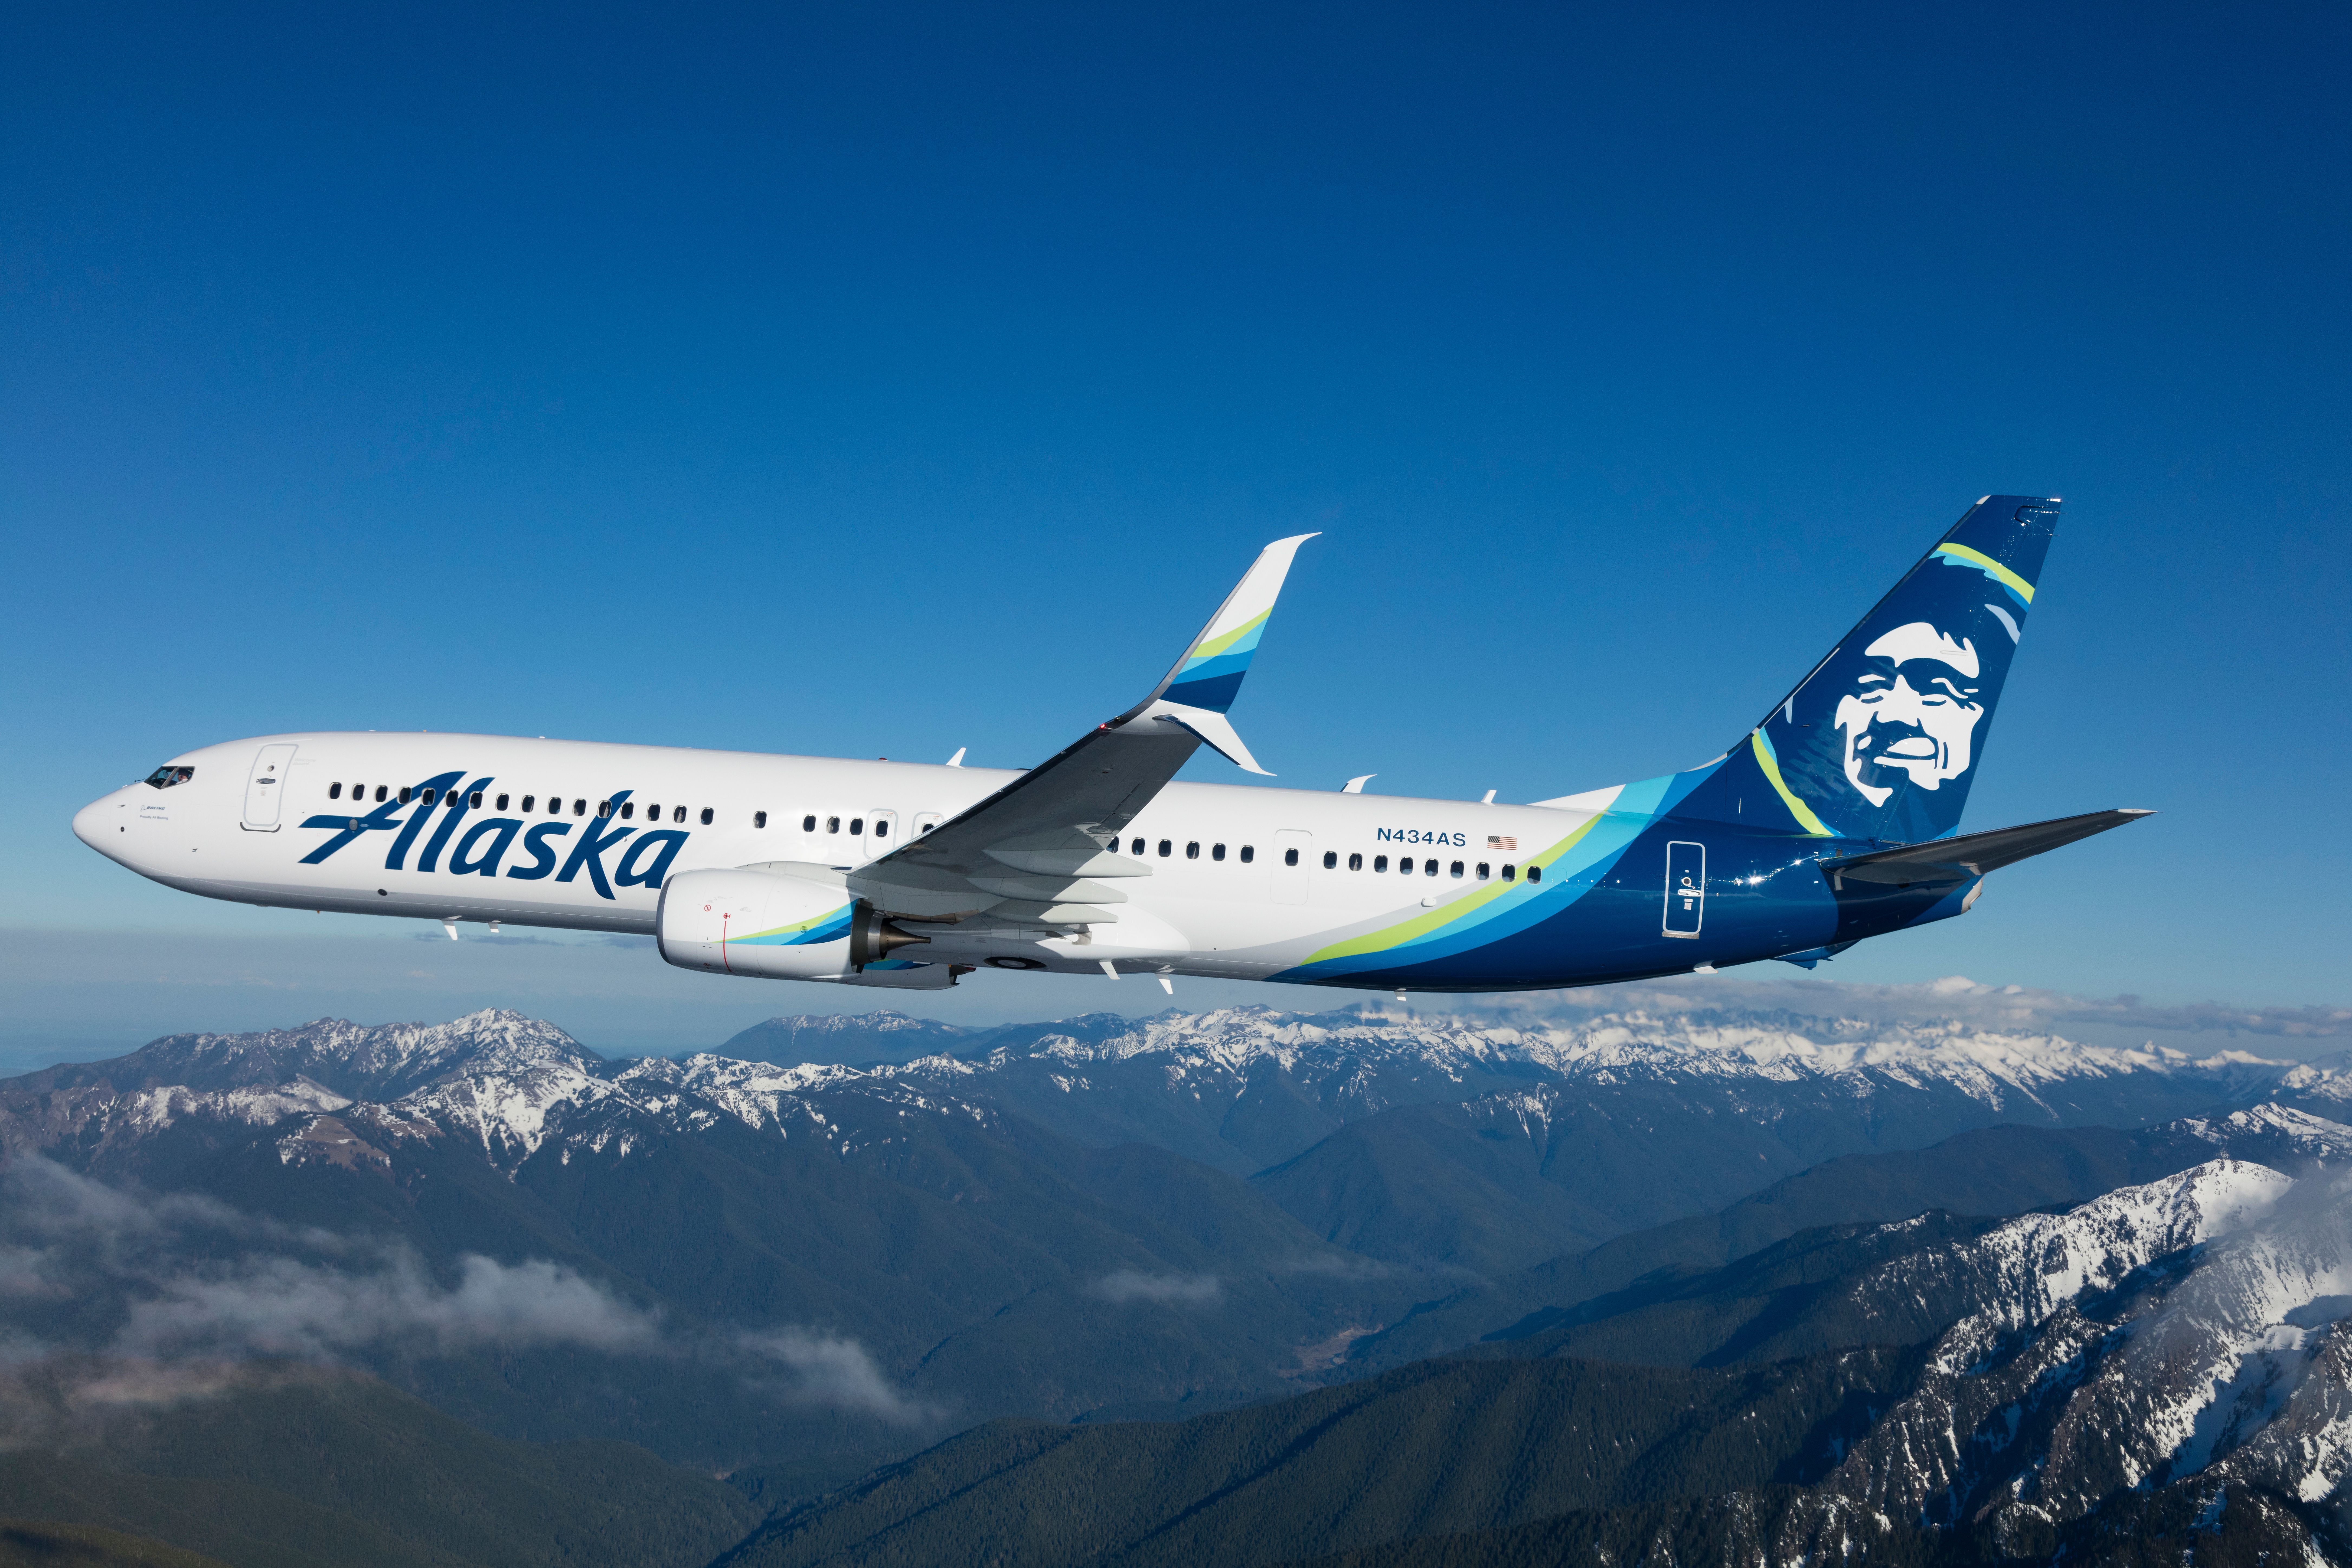 An Alaska Airlines Boeing 737-900ER Flying over mountainous terrain.